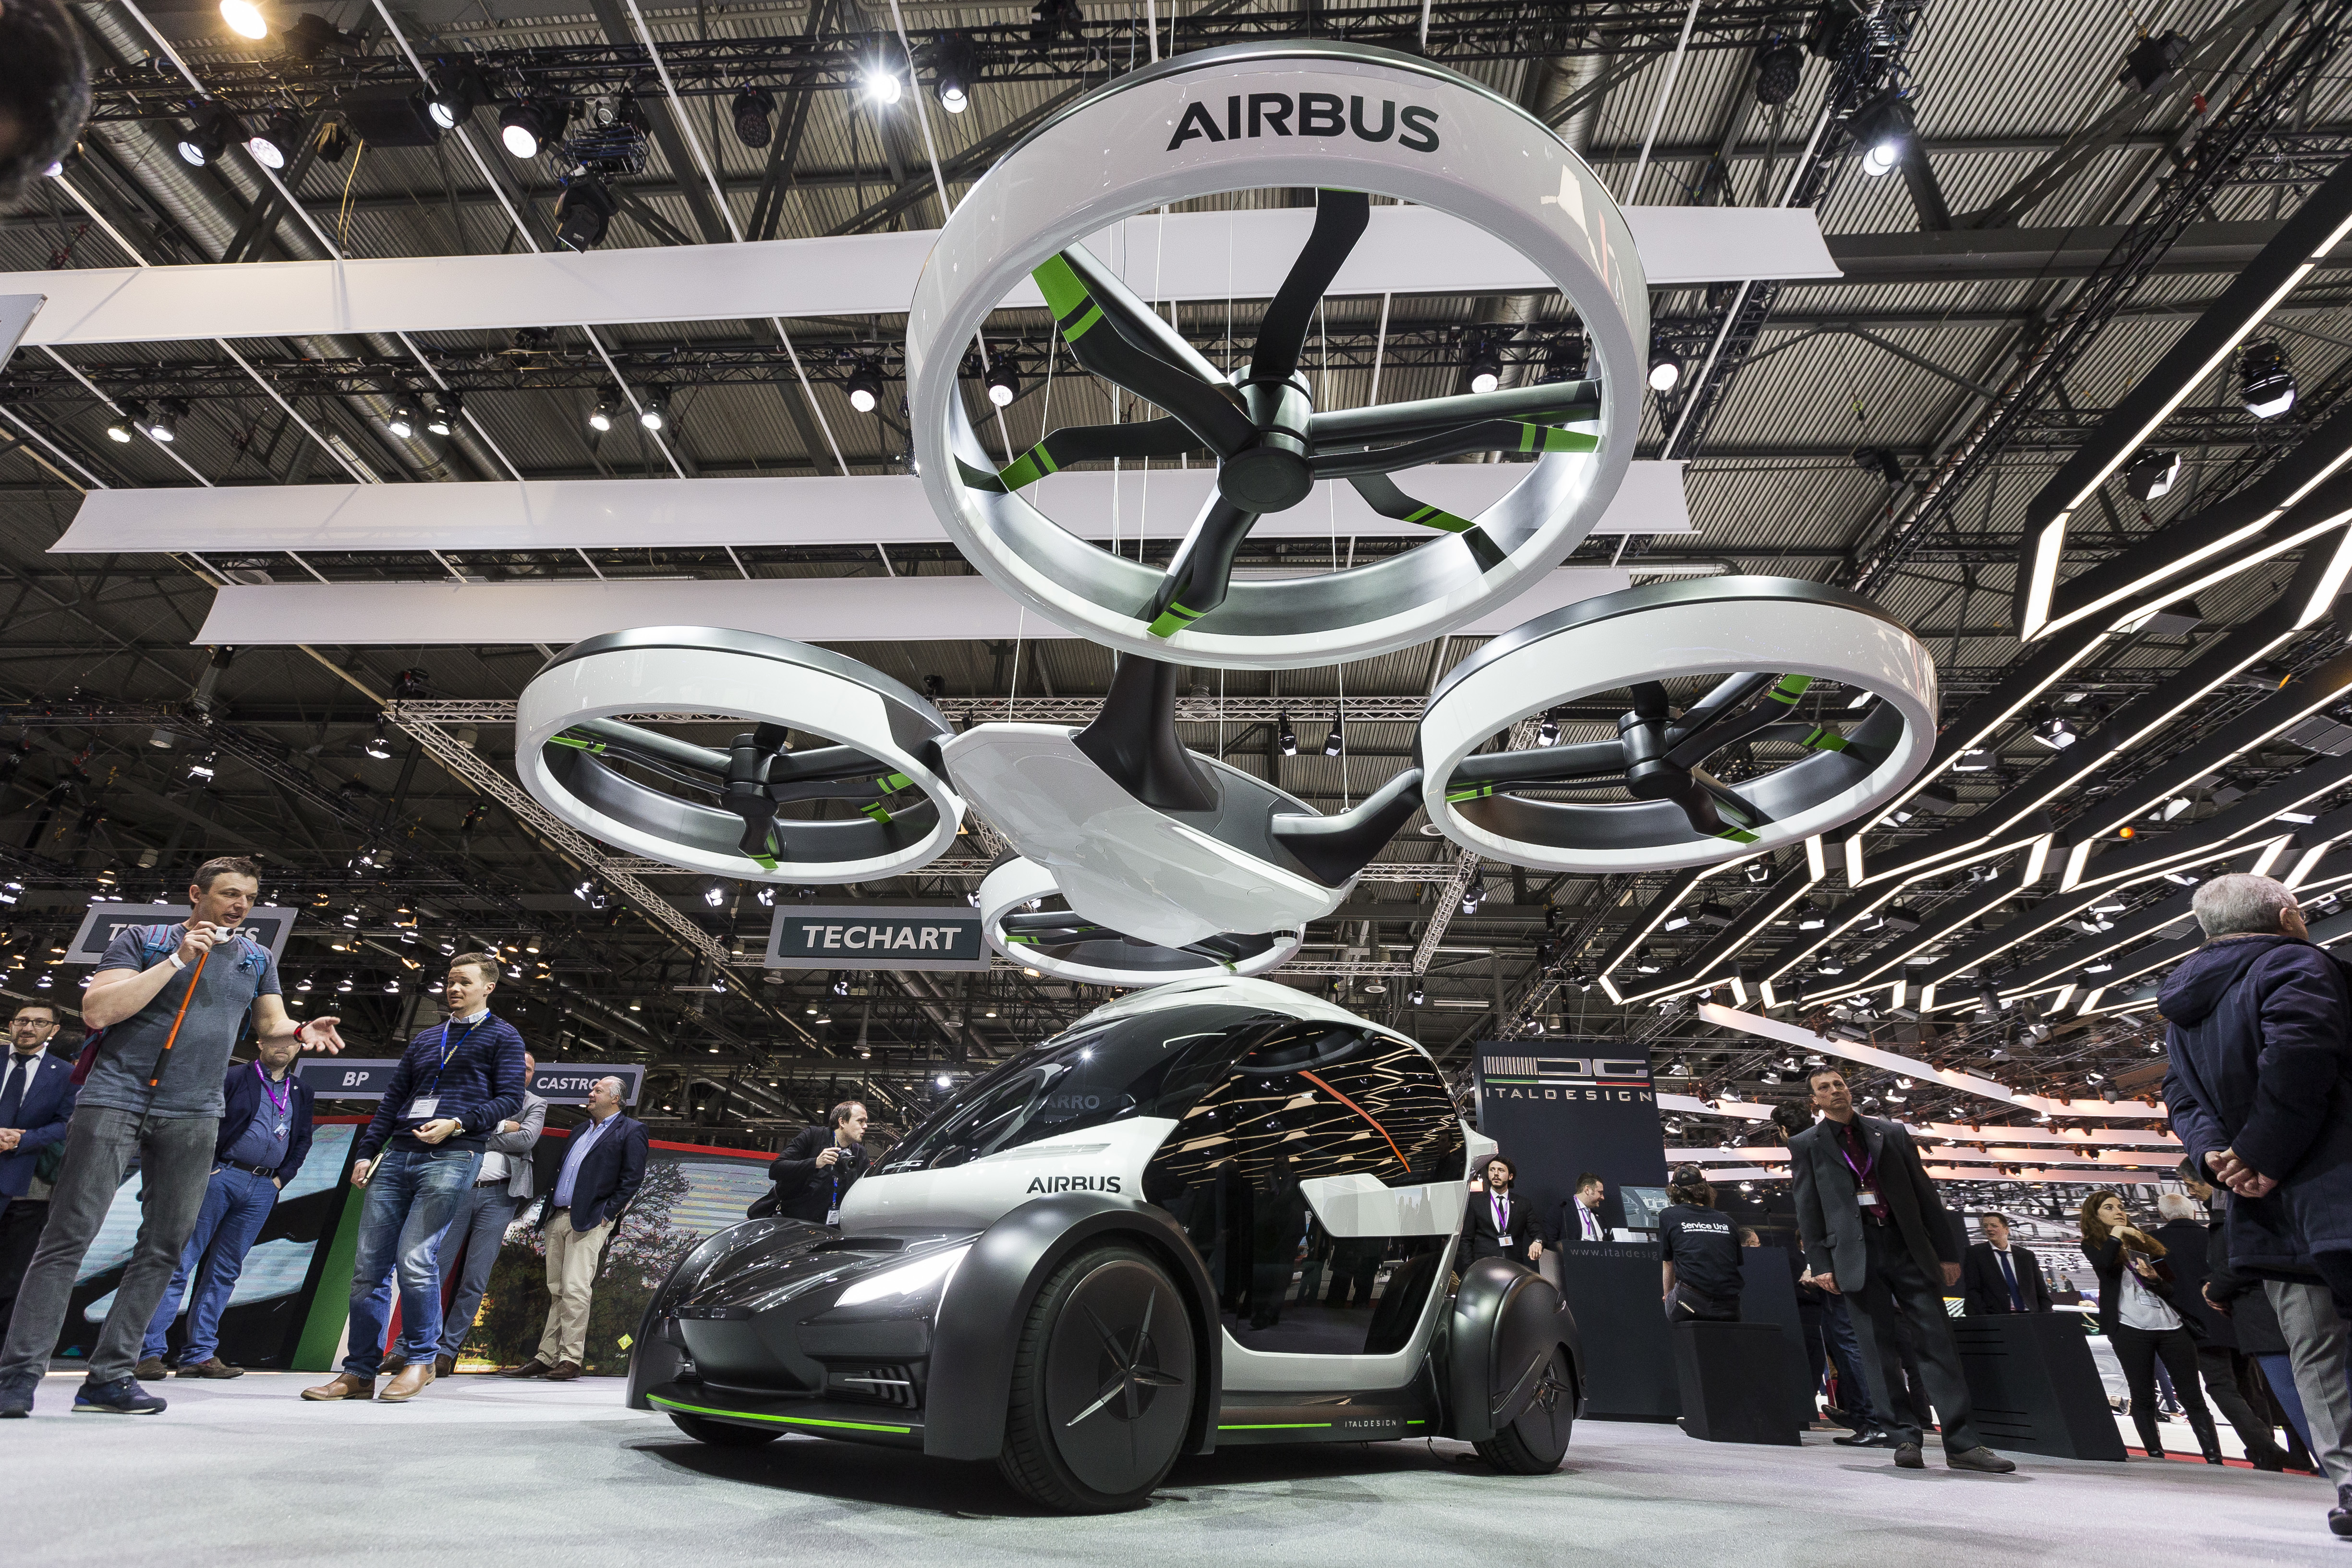 ”Поп.ъп” се нарича засега разработката на ”Еърбъс” за летящ автомобил, представена вчера в Женева